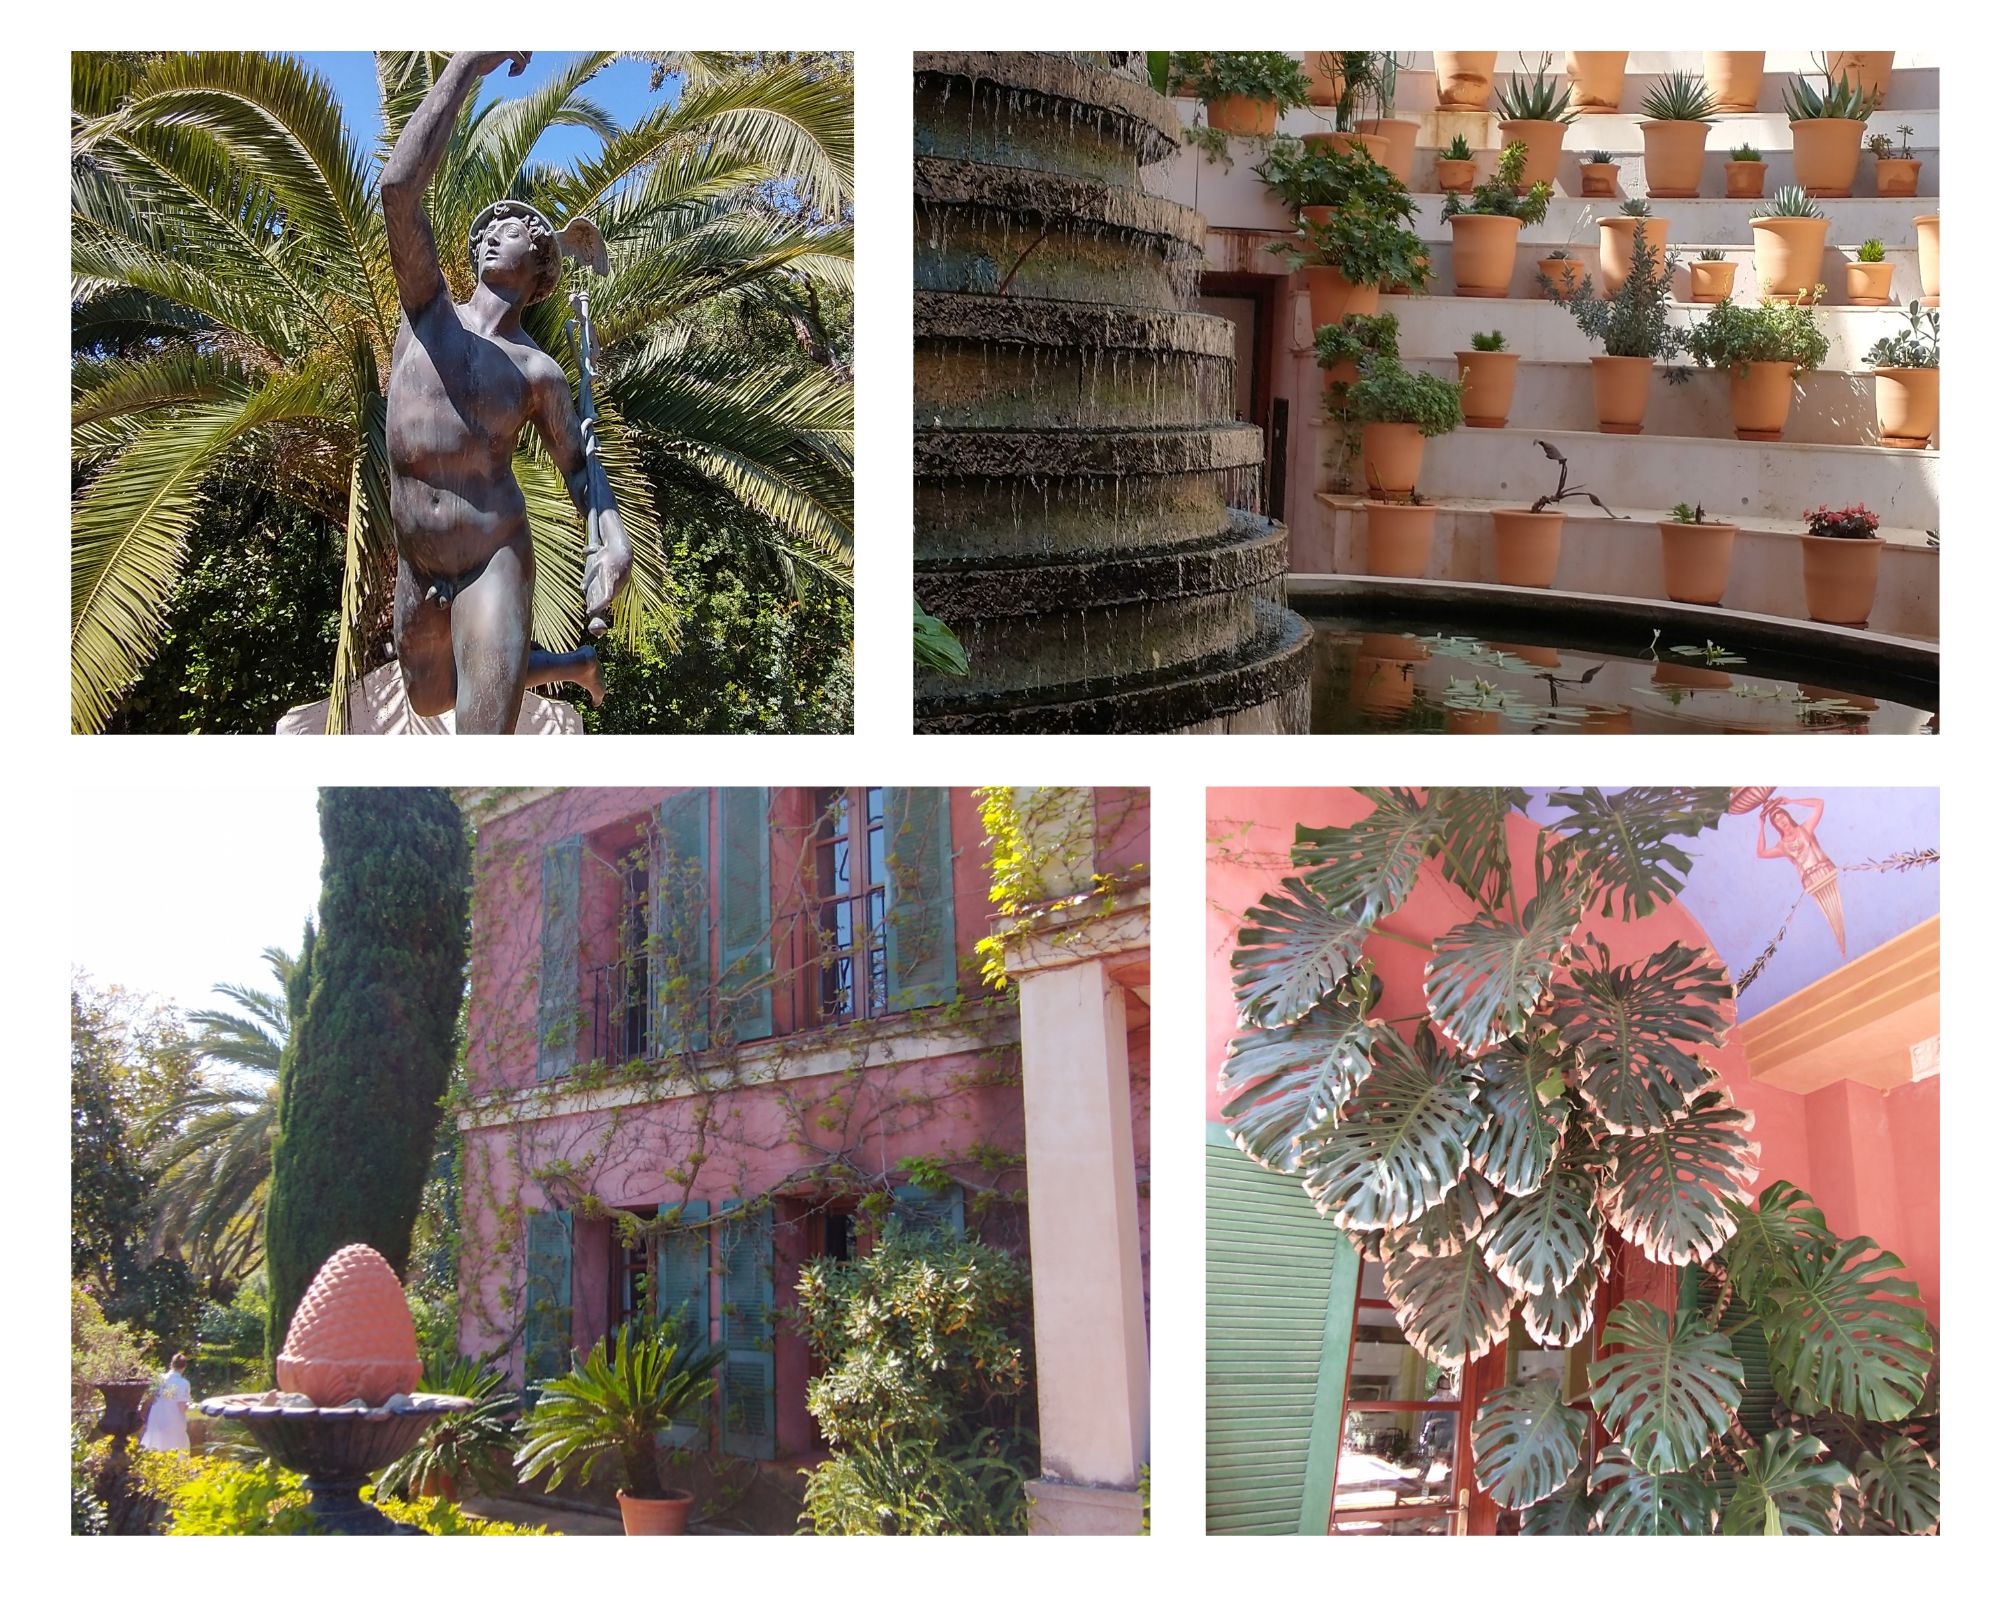 photo collage of the Jardin de l'Albarda near Valencia in Spain